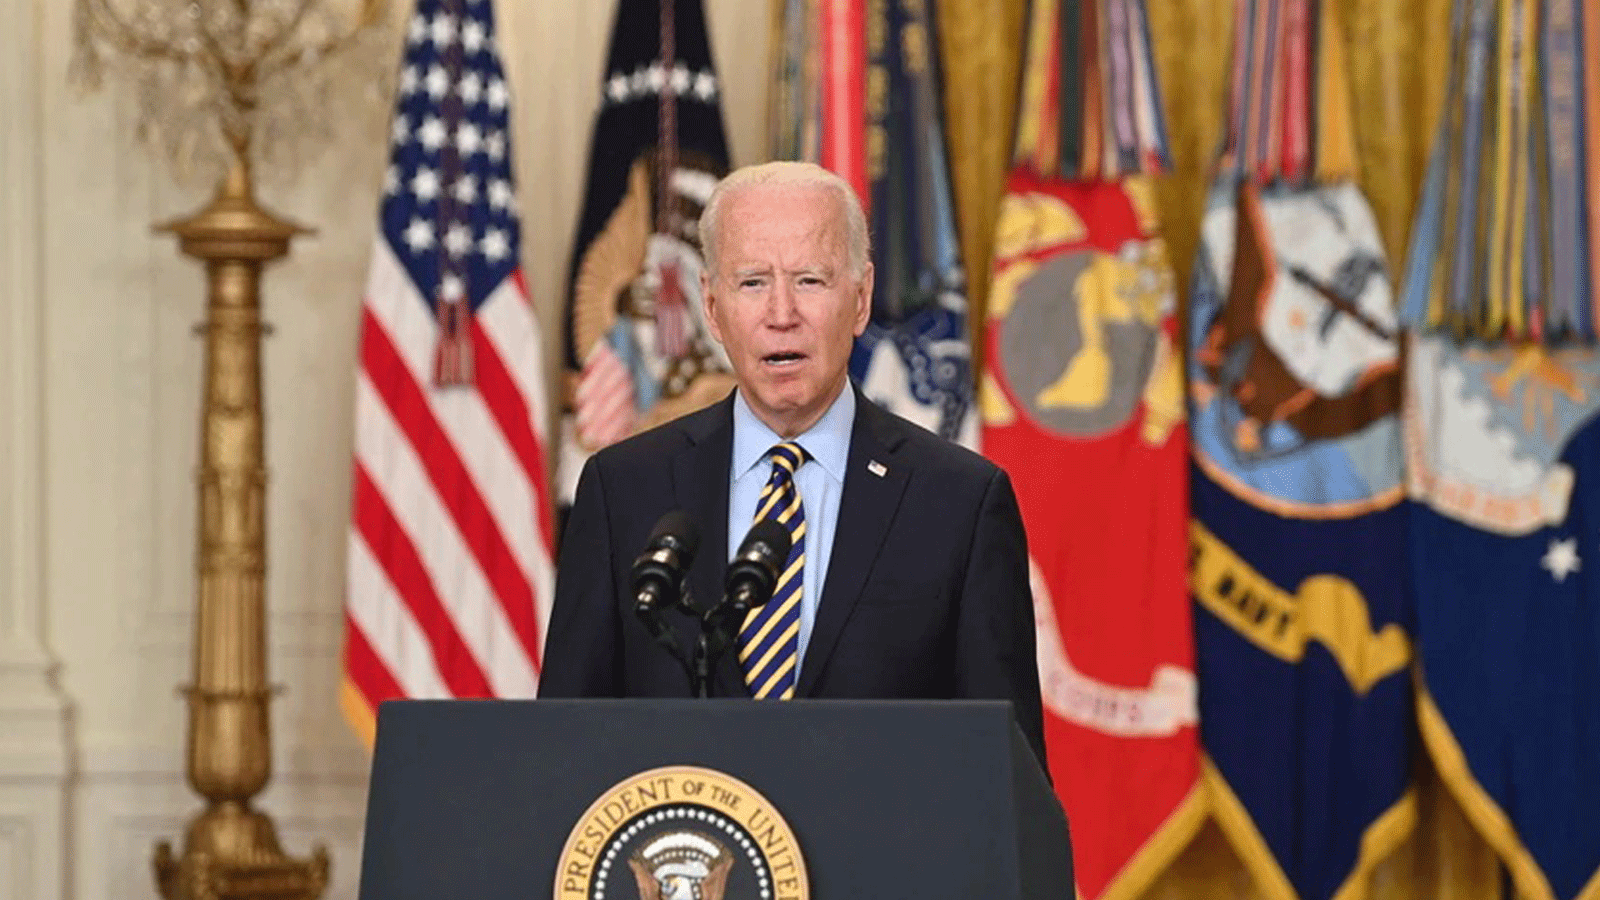 الرئيس الأميركي جو بايدن يتحدث عن انسحاب القوات الأميركية من أفغانستان، في الغرفة الشرقية للبيت الأبيض/ واشنطن، 8 تموز/يوليو 2021.